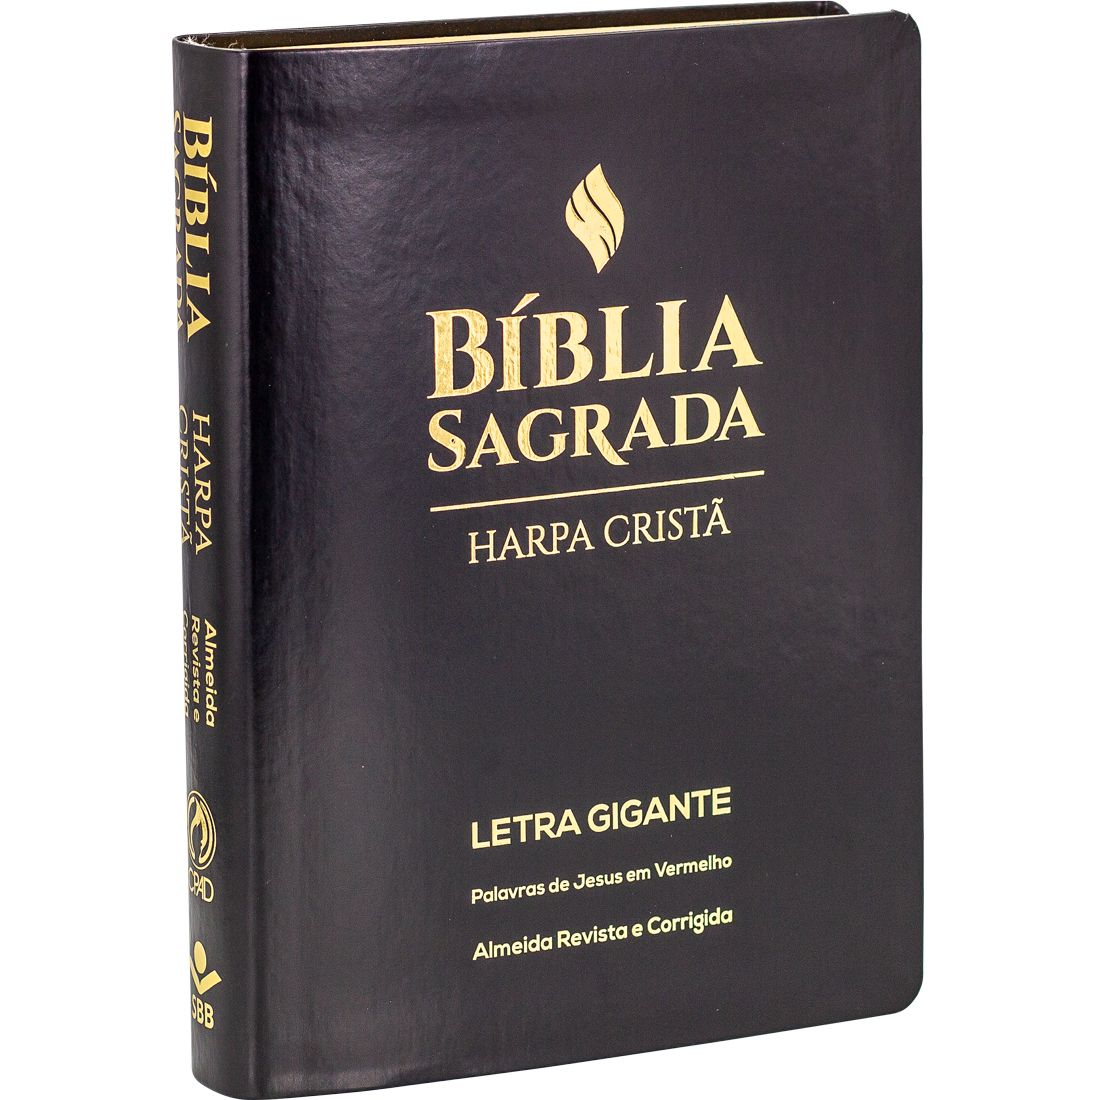 Livraria Metanoia - Devocionais cristãos, Teologia cristã, Vida cristã,  Crescimento espiritual